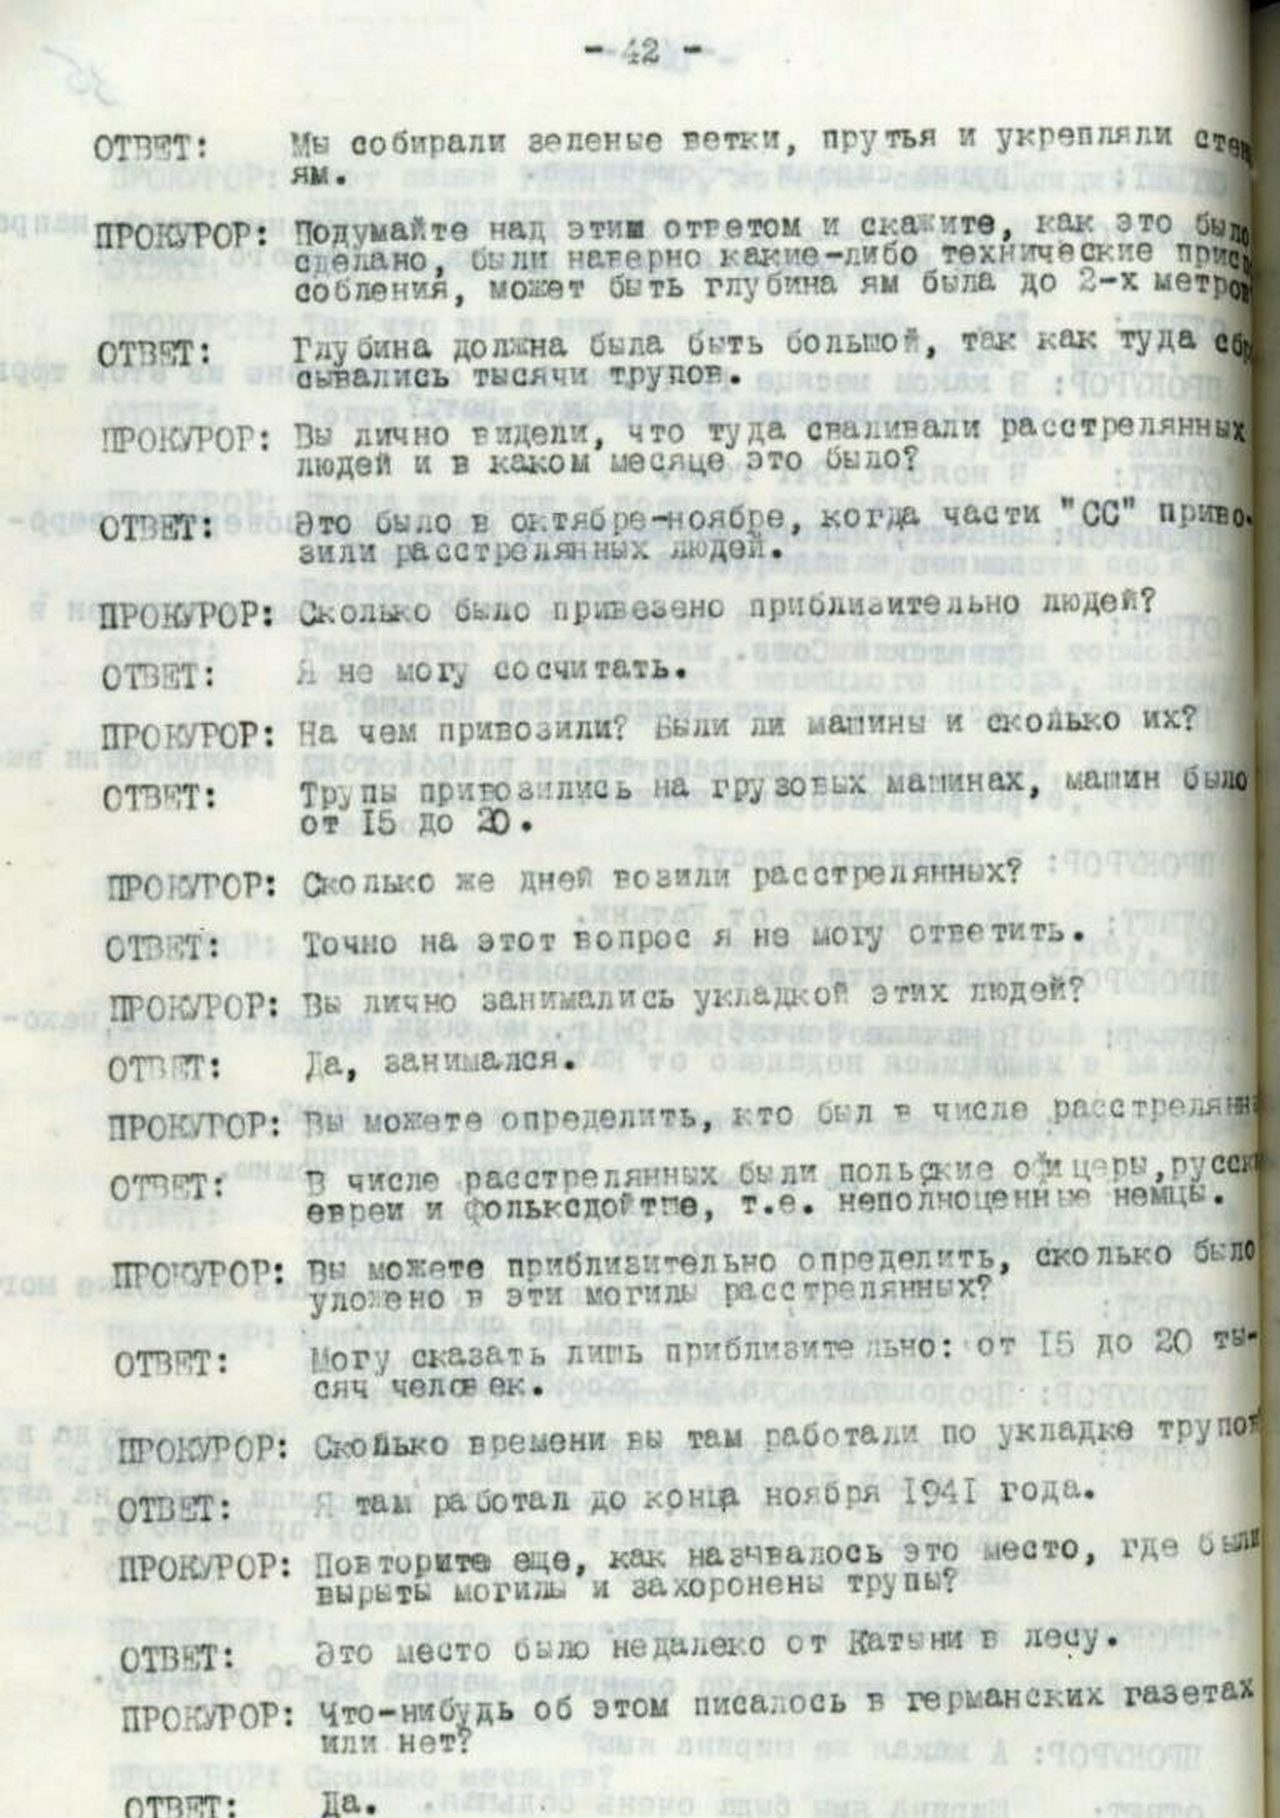 Копия протокола допроса немецкого военнопленного Арно Дюре (стр. 42).